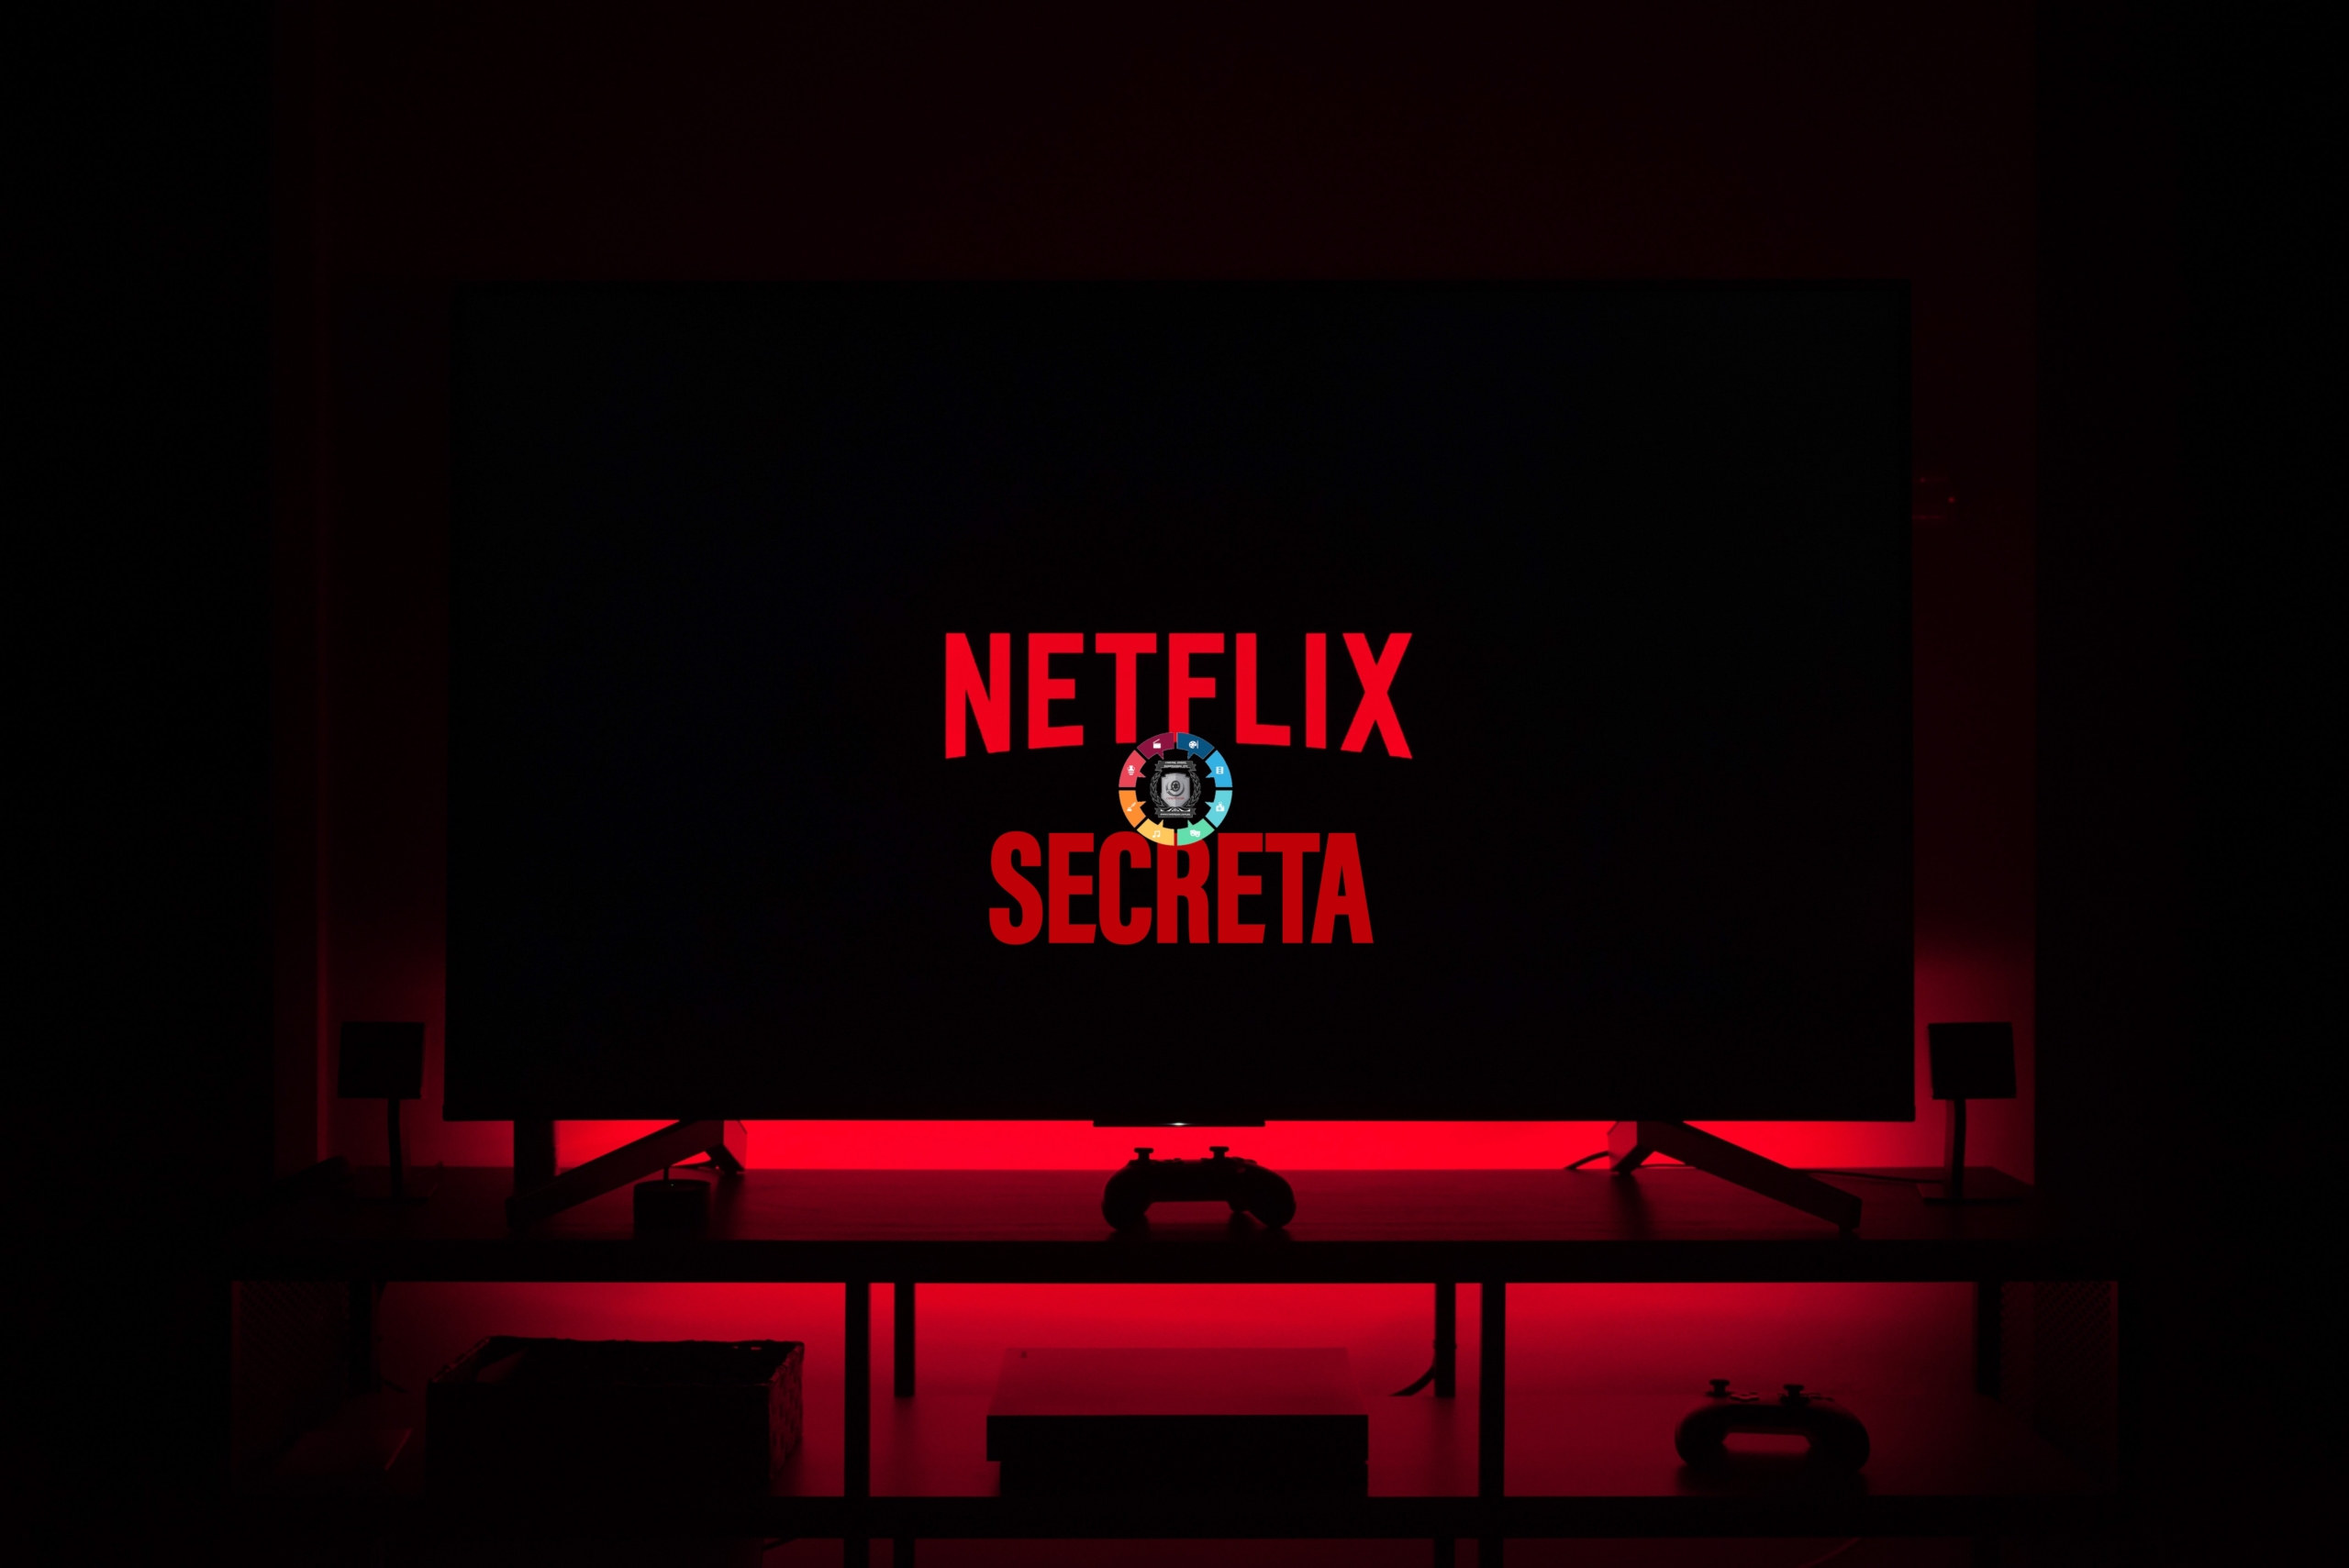 Os códigos secretos para encontrar filmes e séries na Netflix 3